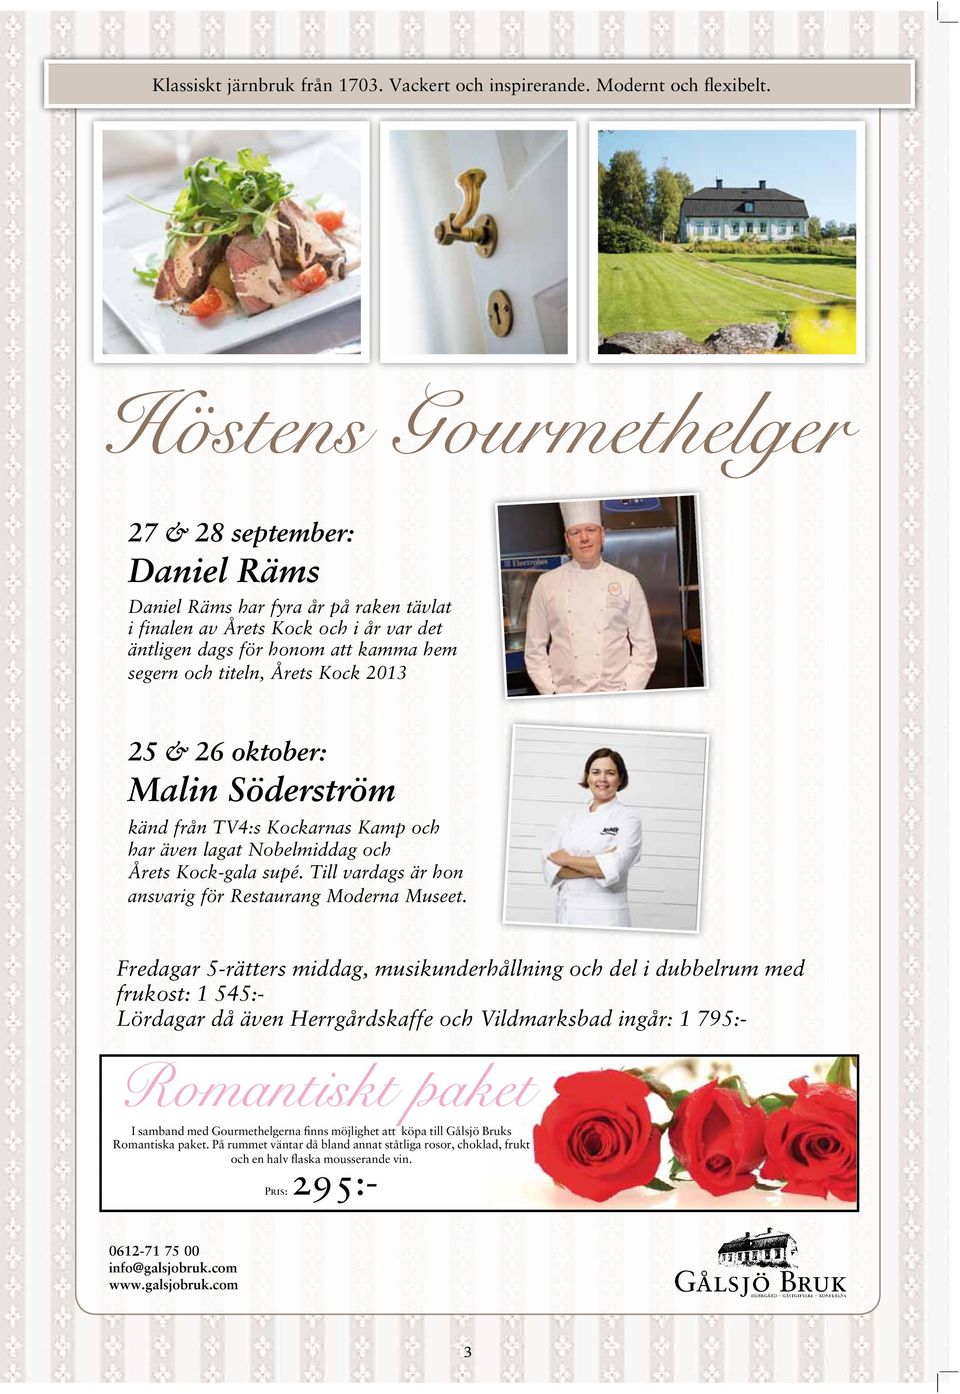 Kock 2013 25 & 26 oktober: Malin Söderström känd från TV4:s Kockarnas Kamp och har även lagat Nobelmiddag och Årets Kock-gala supé. Till vardags är hon ansvarig för Restaurang Moderna Museet.